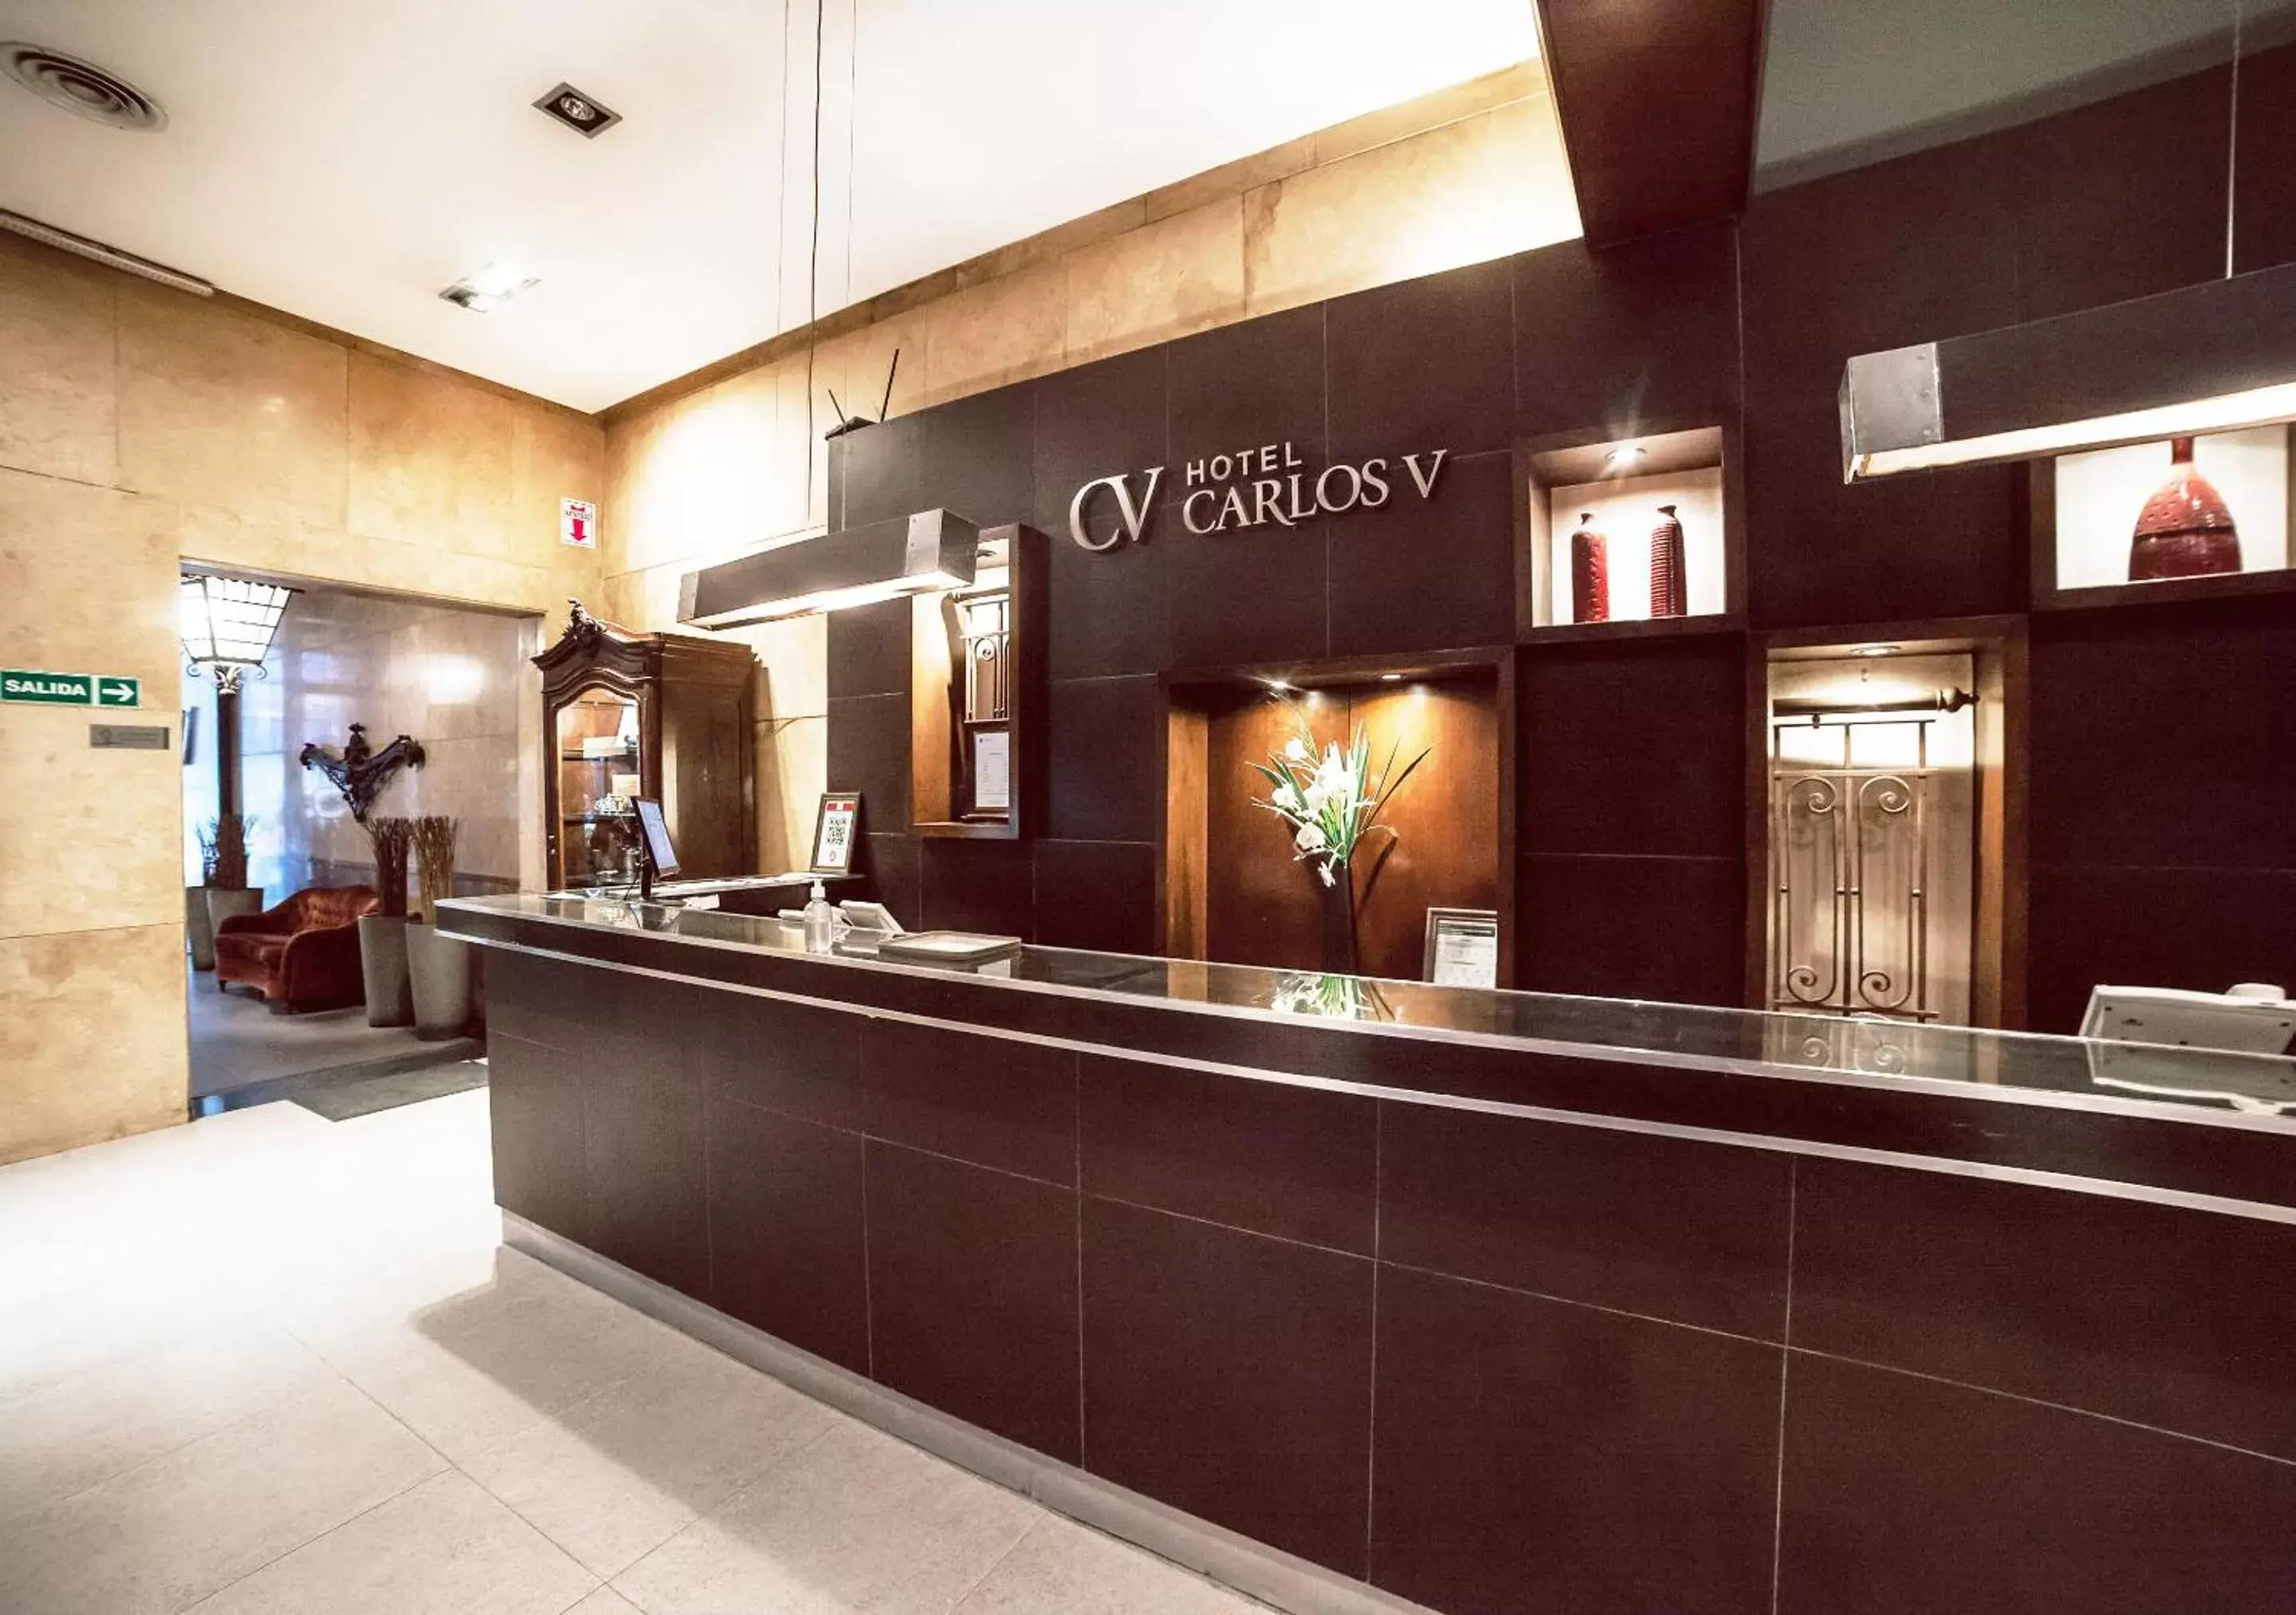 Lobby or reception, Lobby/Reception in Hotel Carlos V